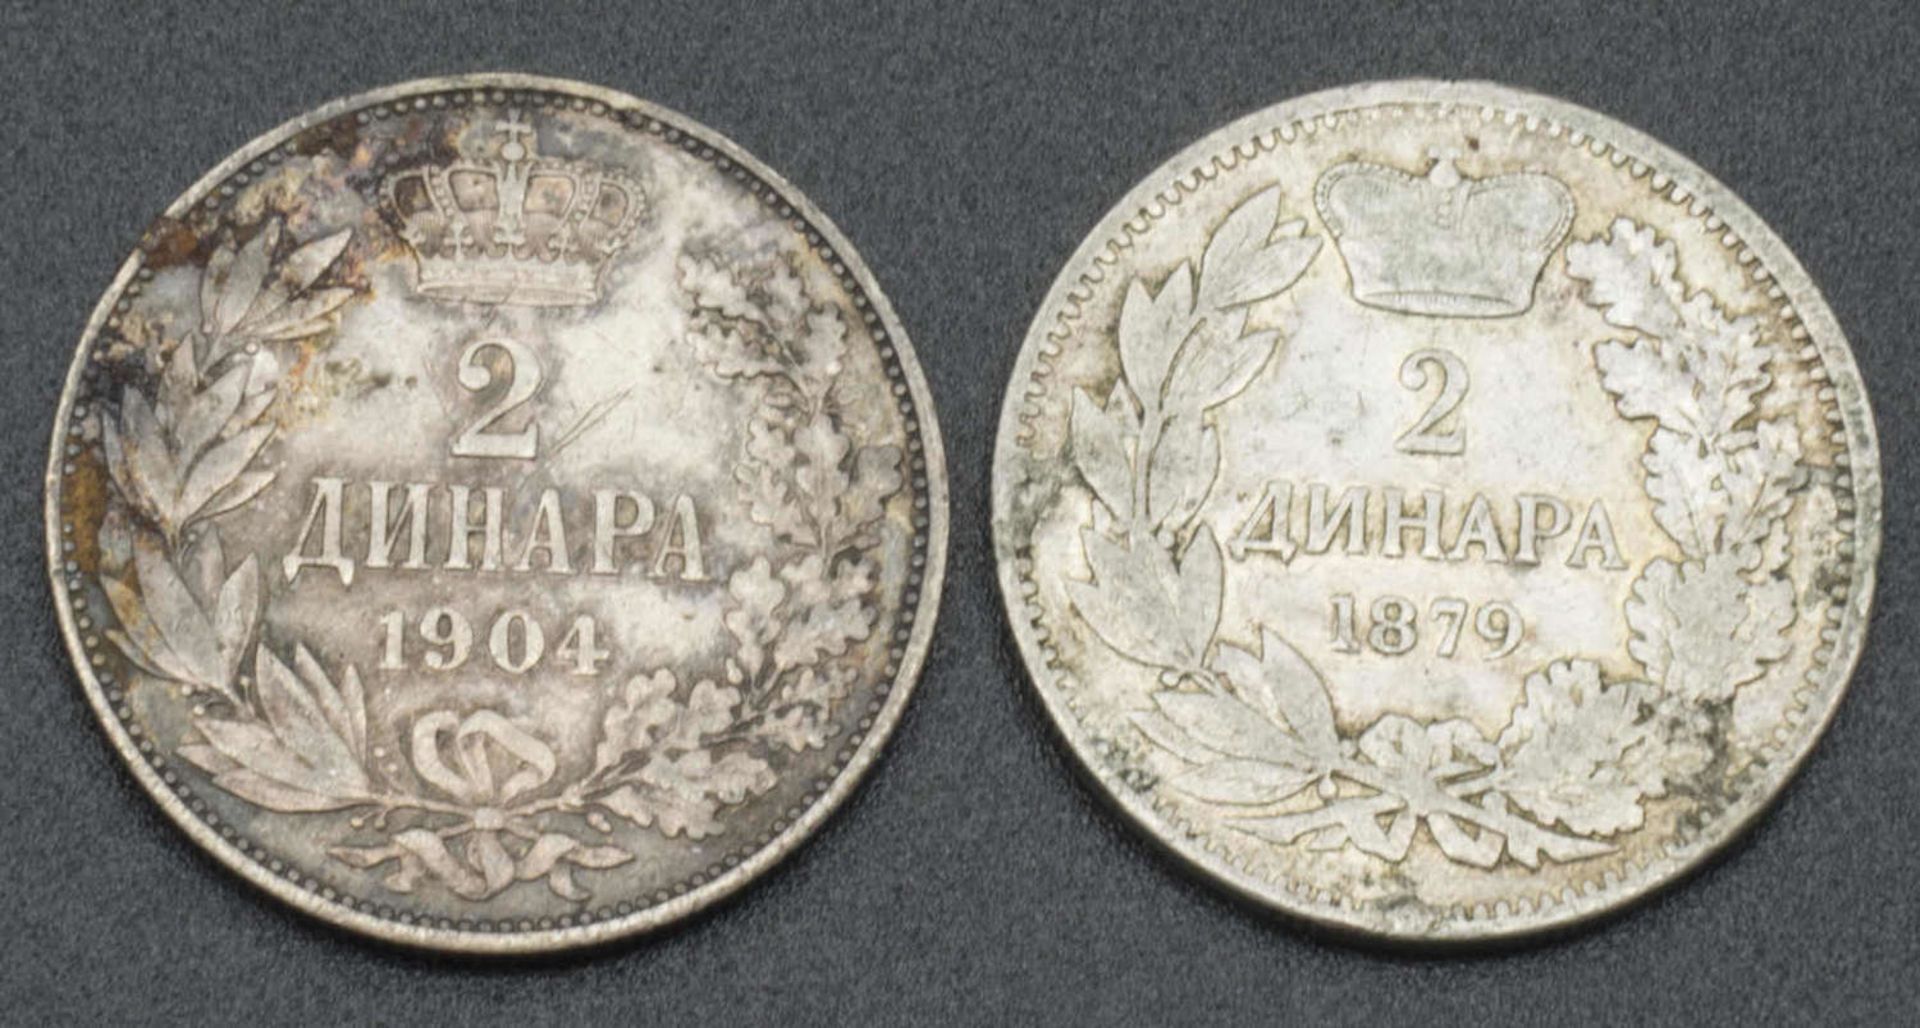 Bulgarien 2 Silbermünzen, 1x 2 Leva 1879 sowie 1x 2 Leva 1904. Bitte besichtigenBulgaria 2 silver - Image 2 of 2